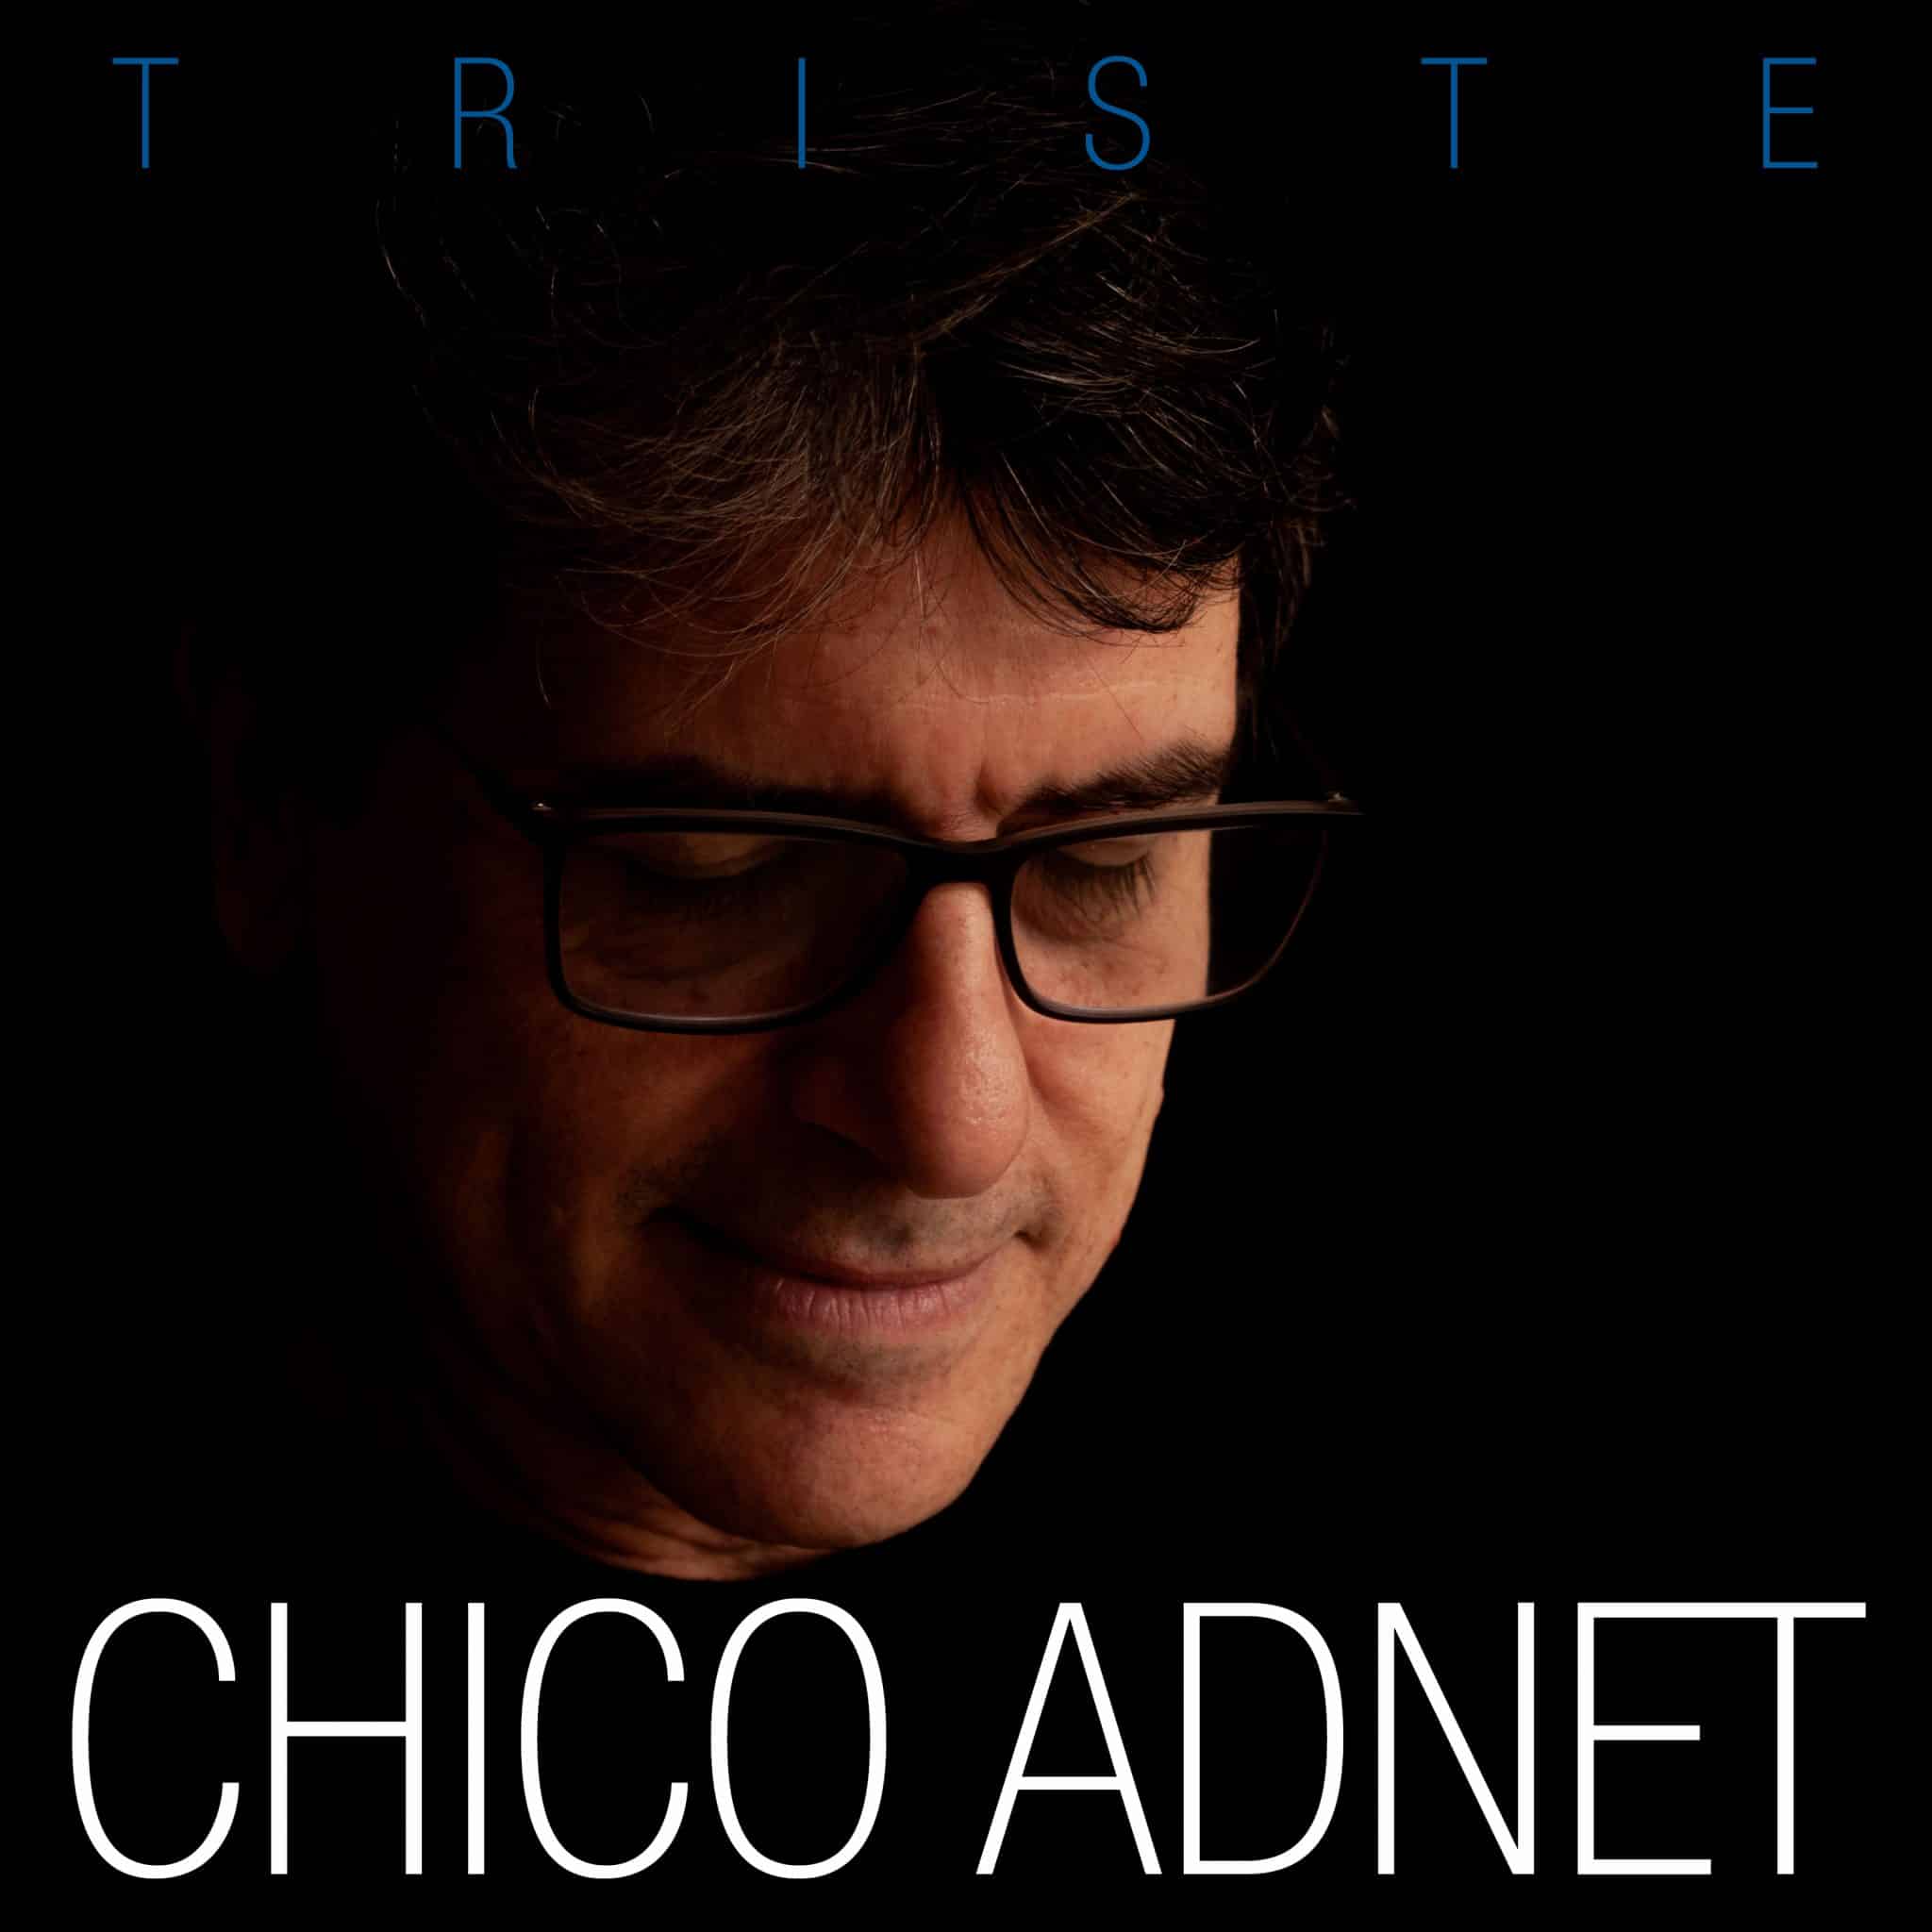 revistaprosaversoearte.com - 'Triste', 4º álbum do pianista, compositor e arranjador Chico Adnet